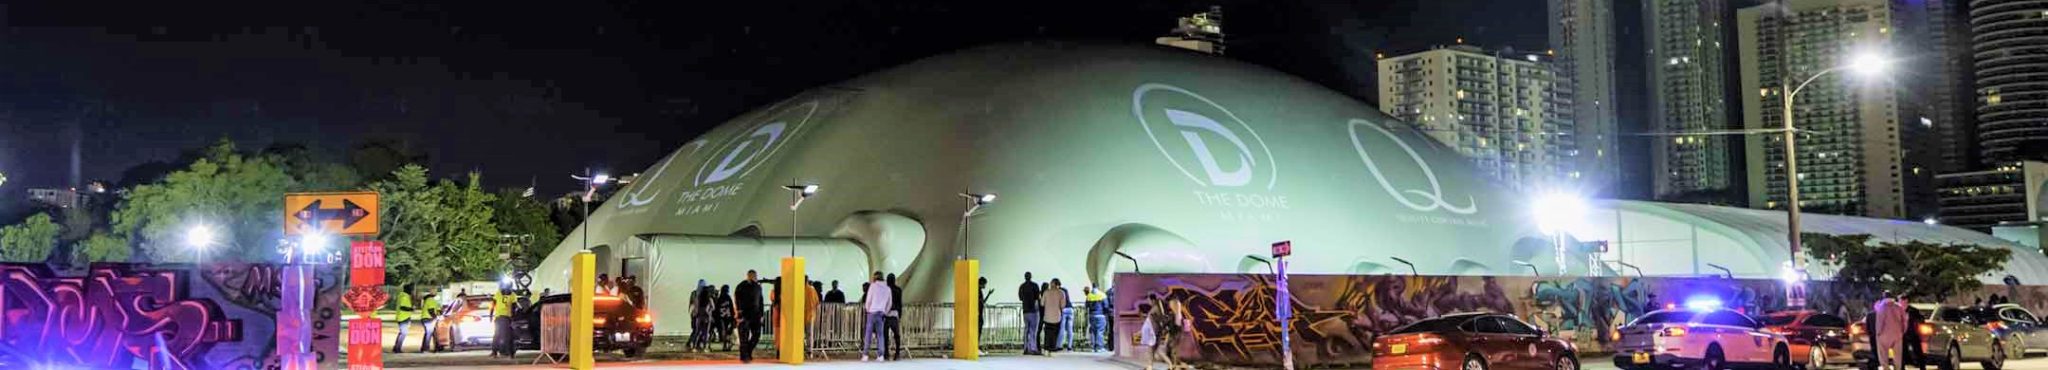 The Dome Miami